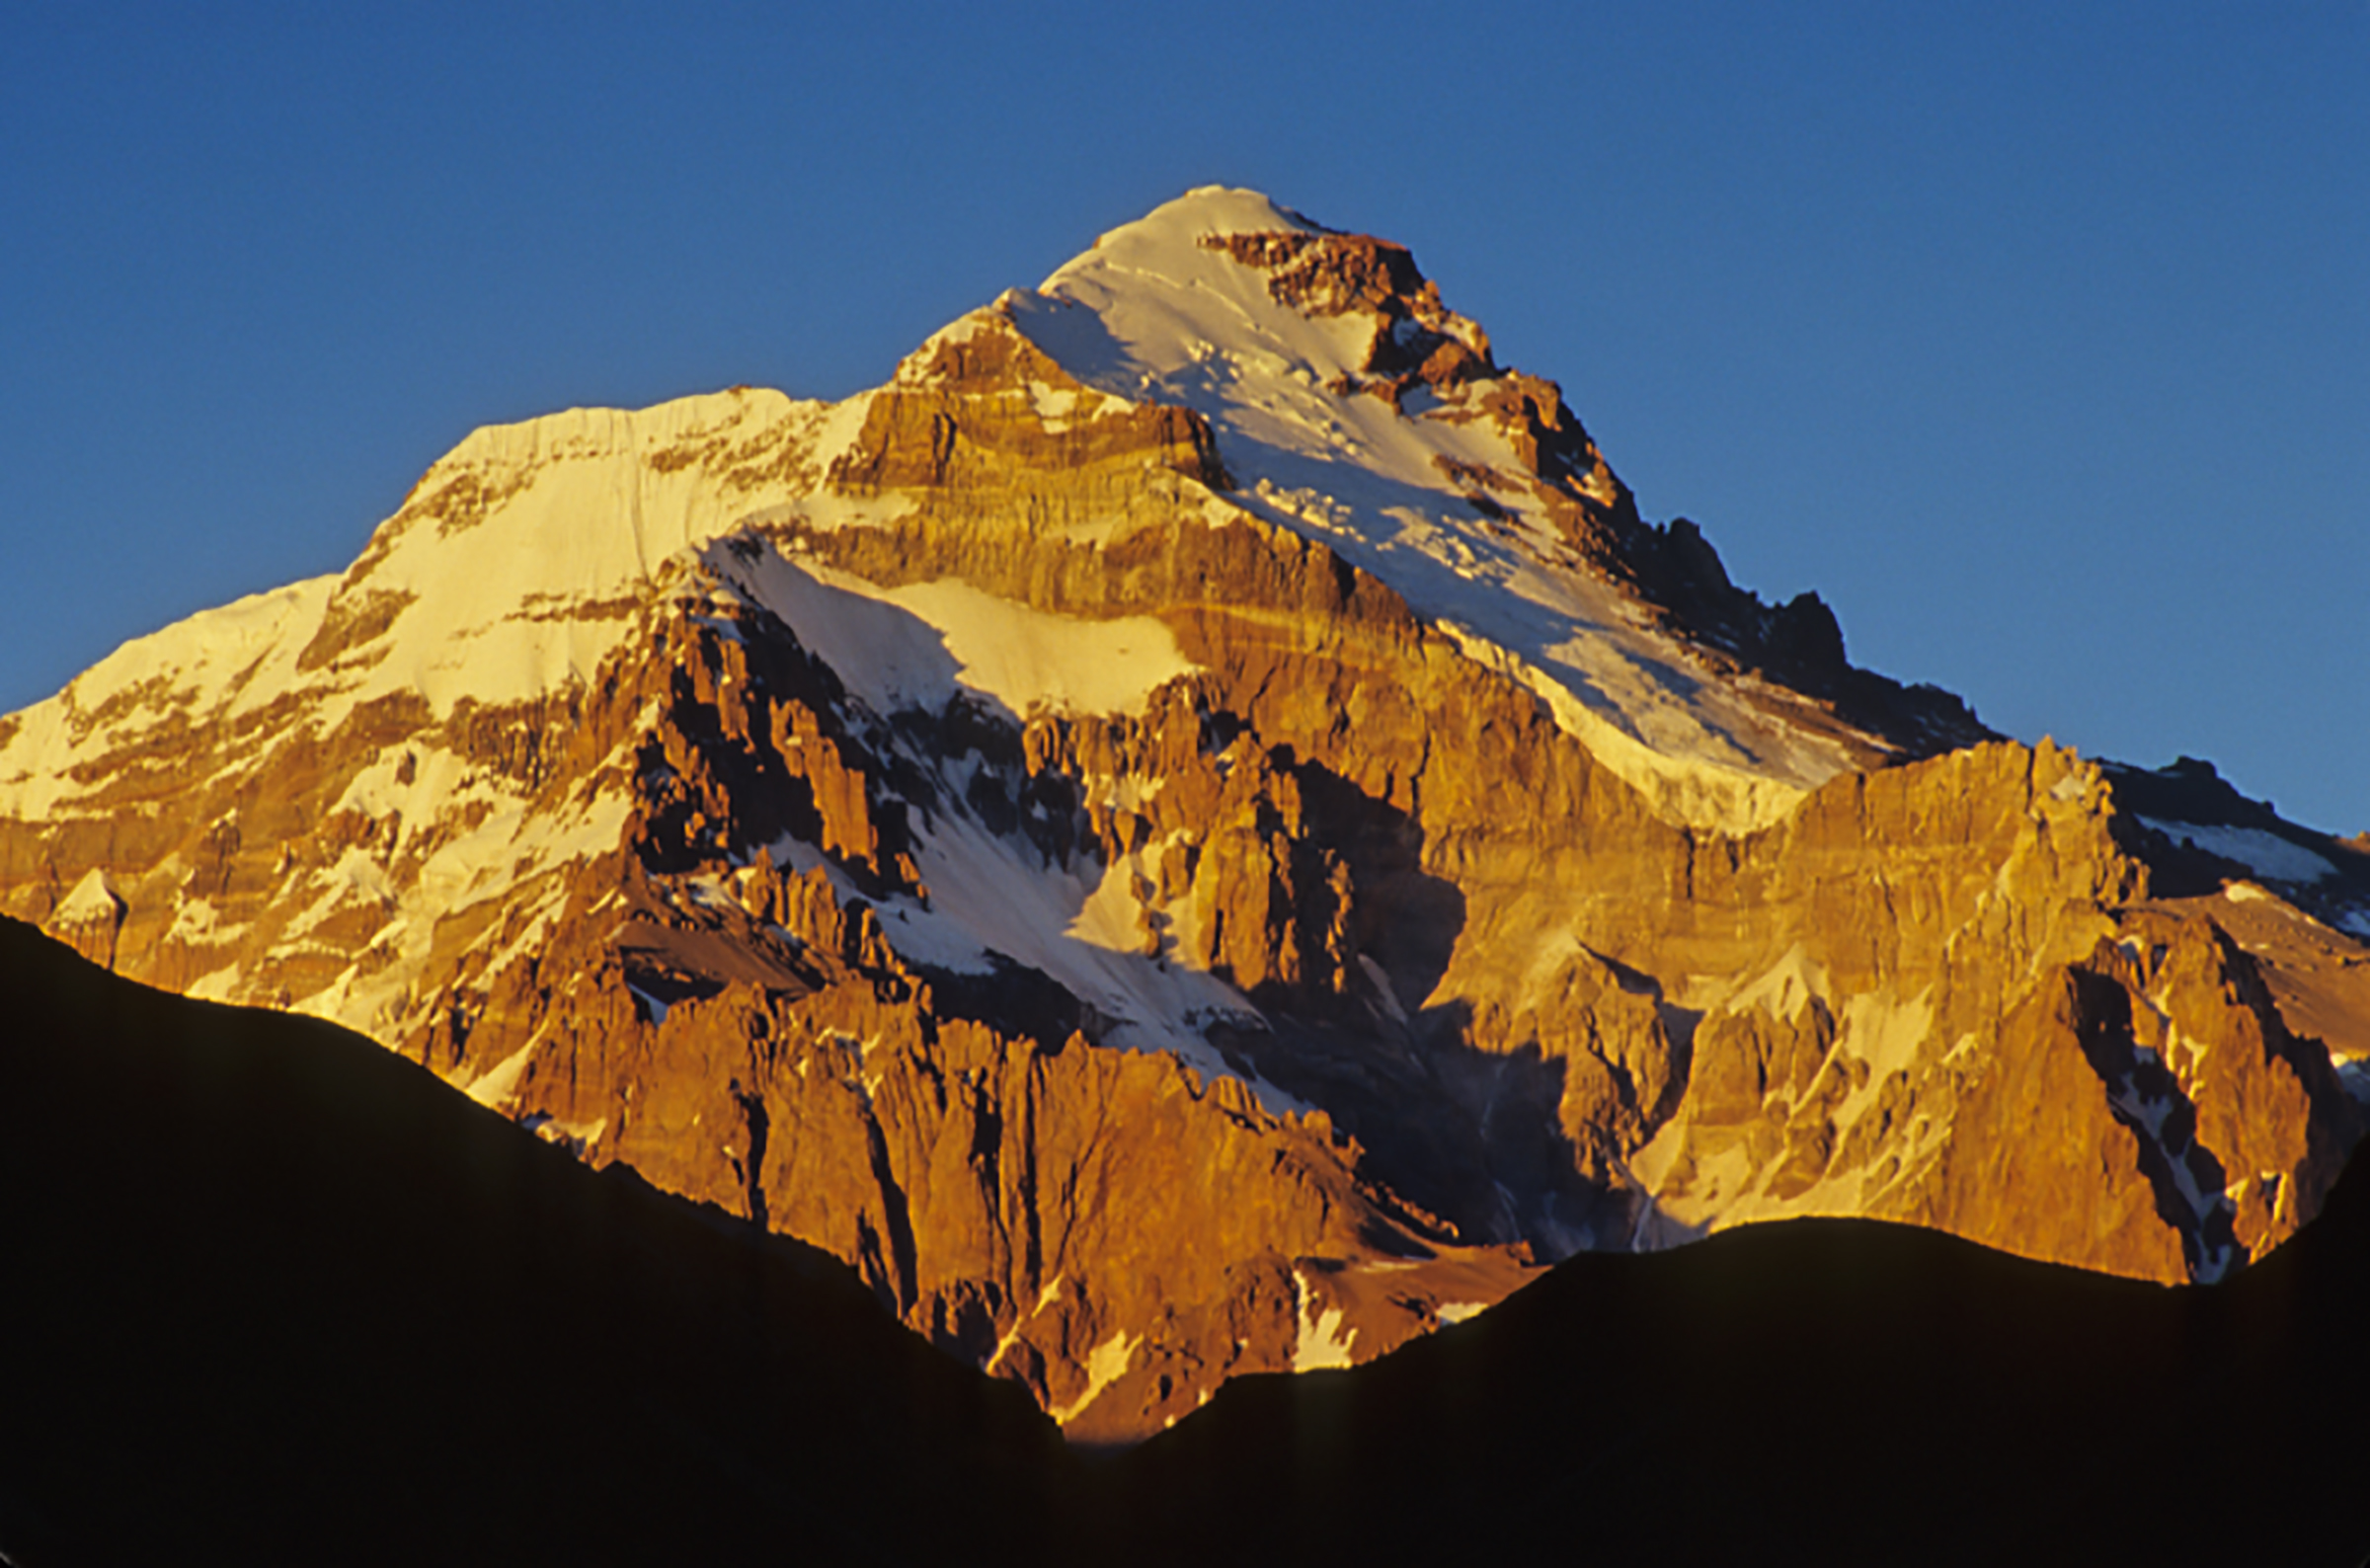 Высшая точка горной системы южной америки. Горы Анды вершина гора АК. Чили Аконкагуа. Аконкагуа горные вершины. Южная Америка вершина гора Аконкагуа.